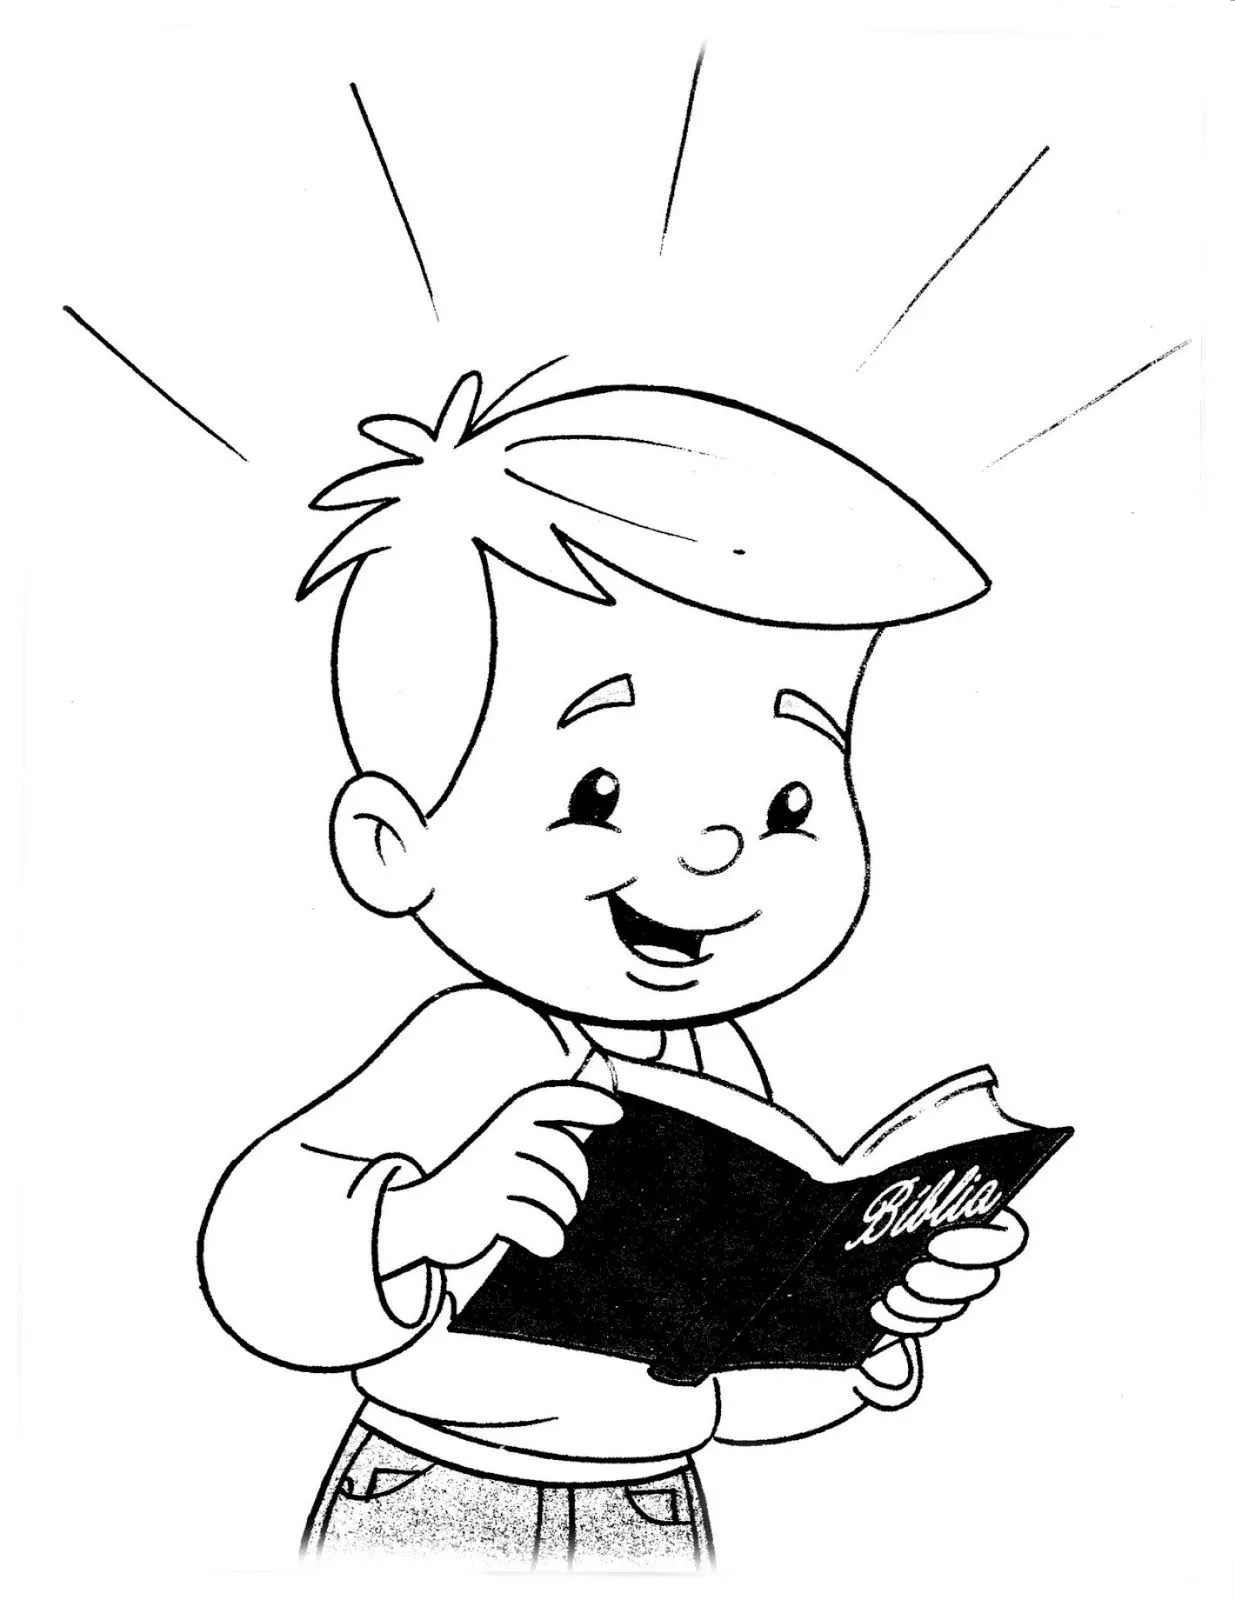 Dibujos para colorear de niños leyendo la biblia - Imagui